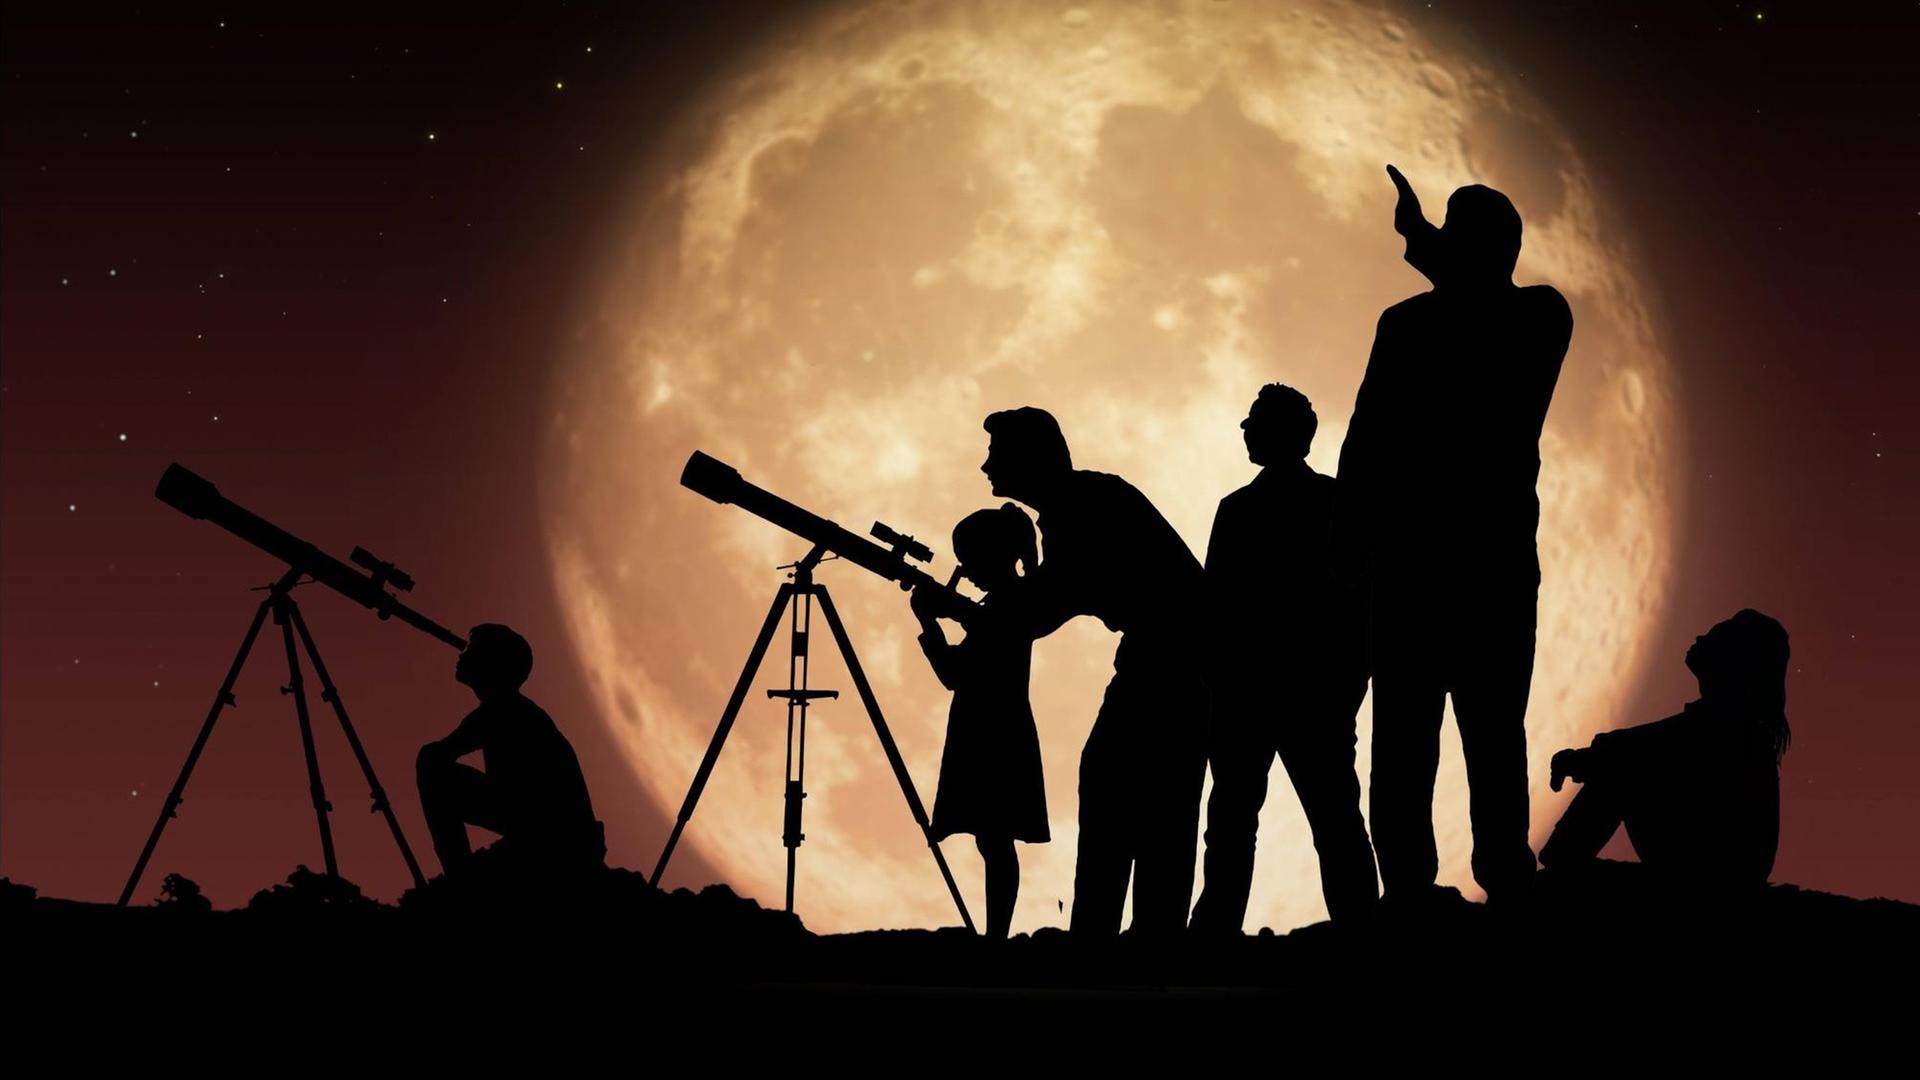 Silhouetten von Menschen die durch Teleskope in den Nachthimmel blicken.